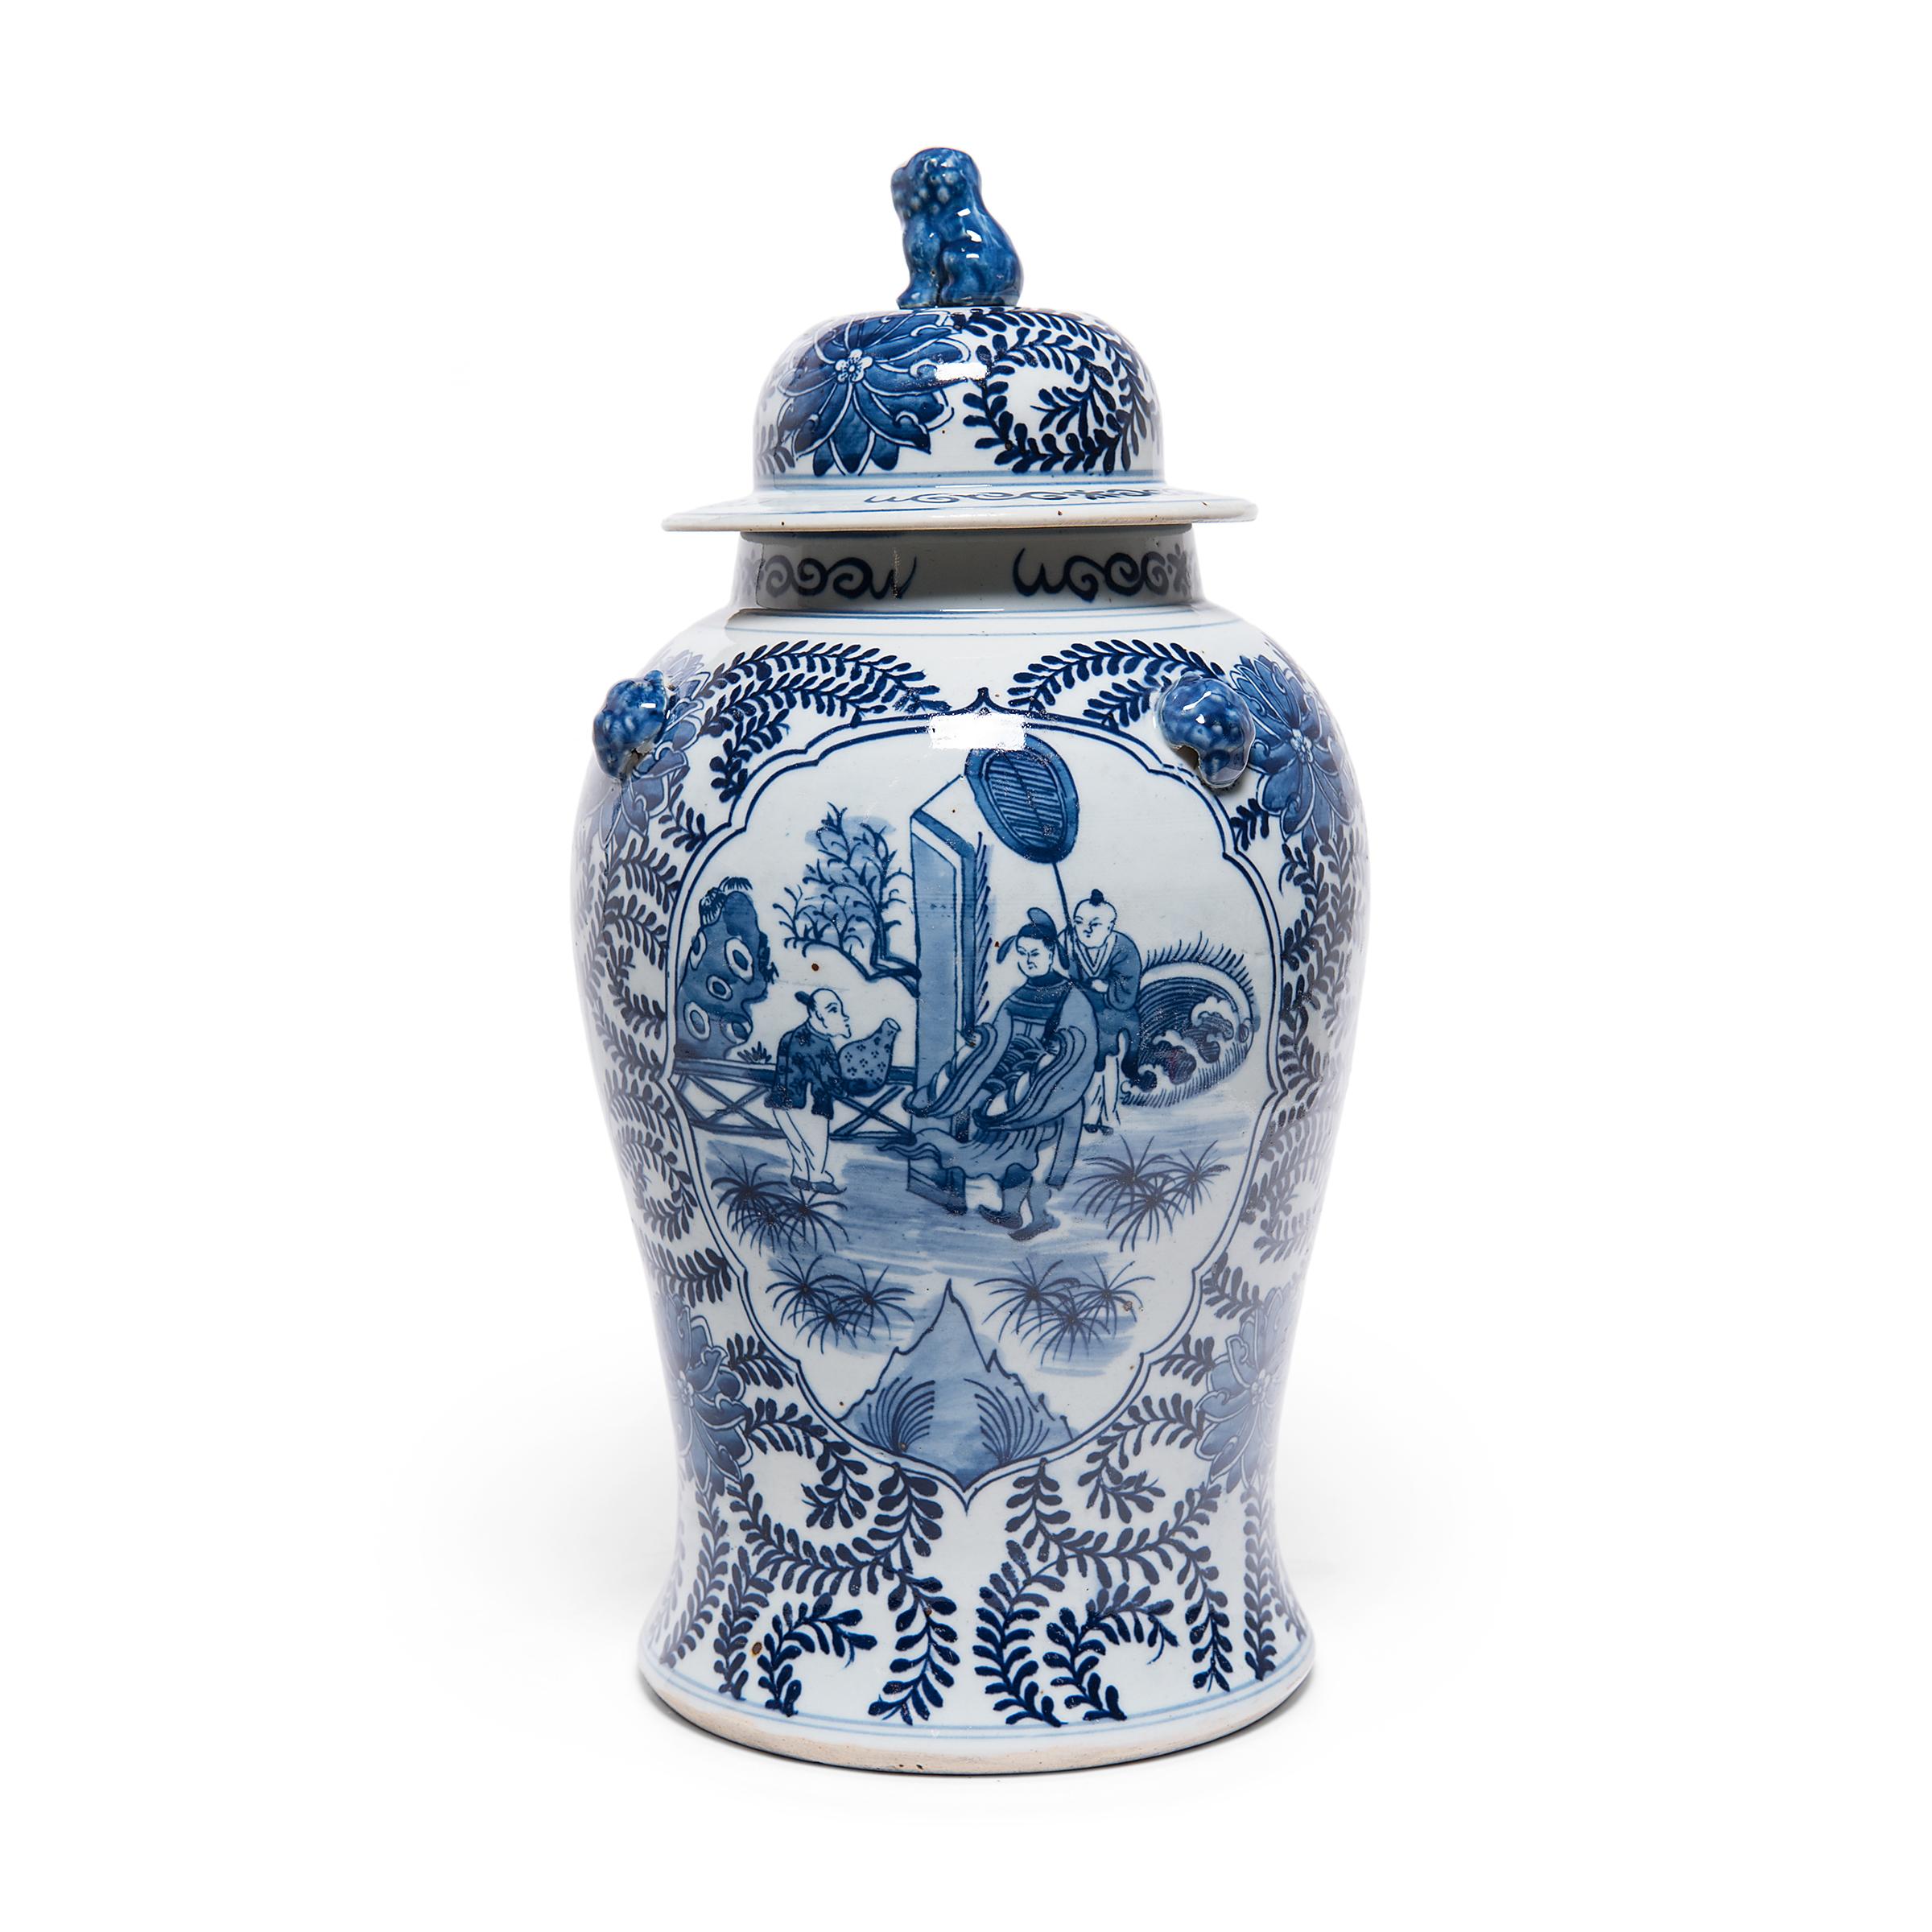 Dieses zeitgenössische Balustergefäß mit Deckel knüpft an die jahrhundertealte Tradition chinesischer blau-weißer Porzellanwaren an. Das mit Kobaltpigmenten in leuchtendem Blau bemalte Gefäß ist dicht mit Rankenwerk und Chrysanthemenblüten, Symbolen